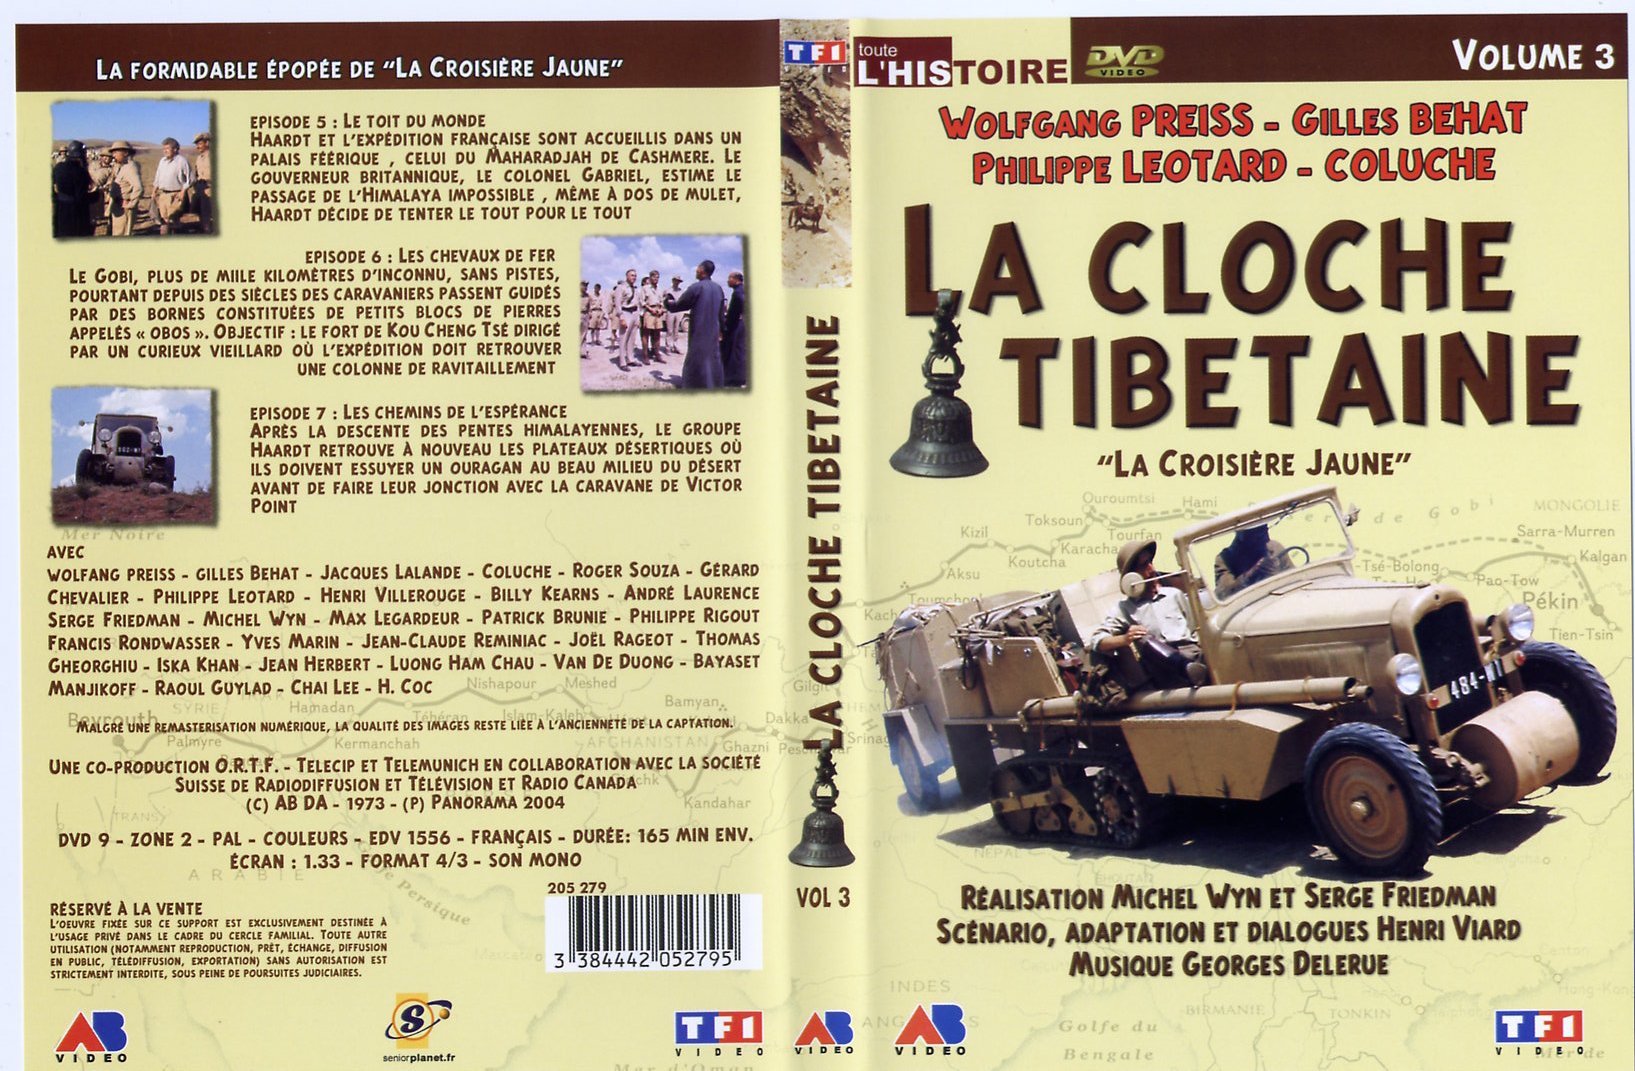 Jaquette DVD La cloche tibetaine vol 3